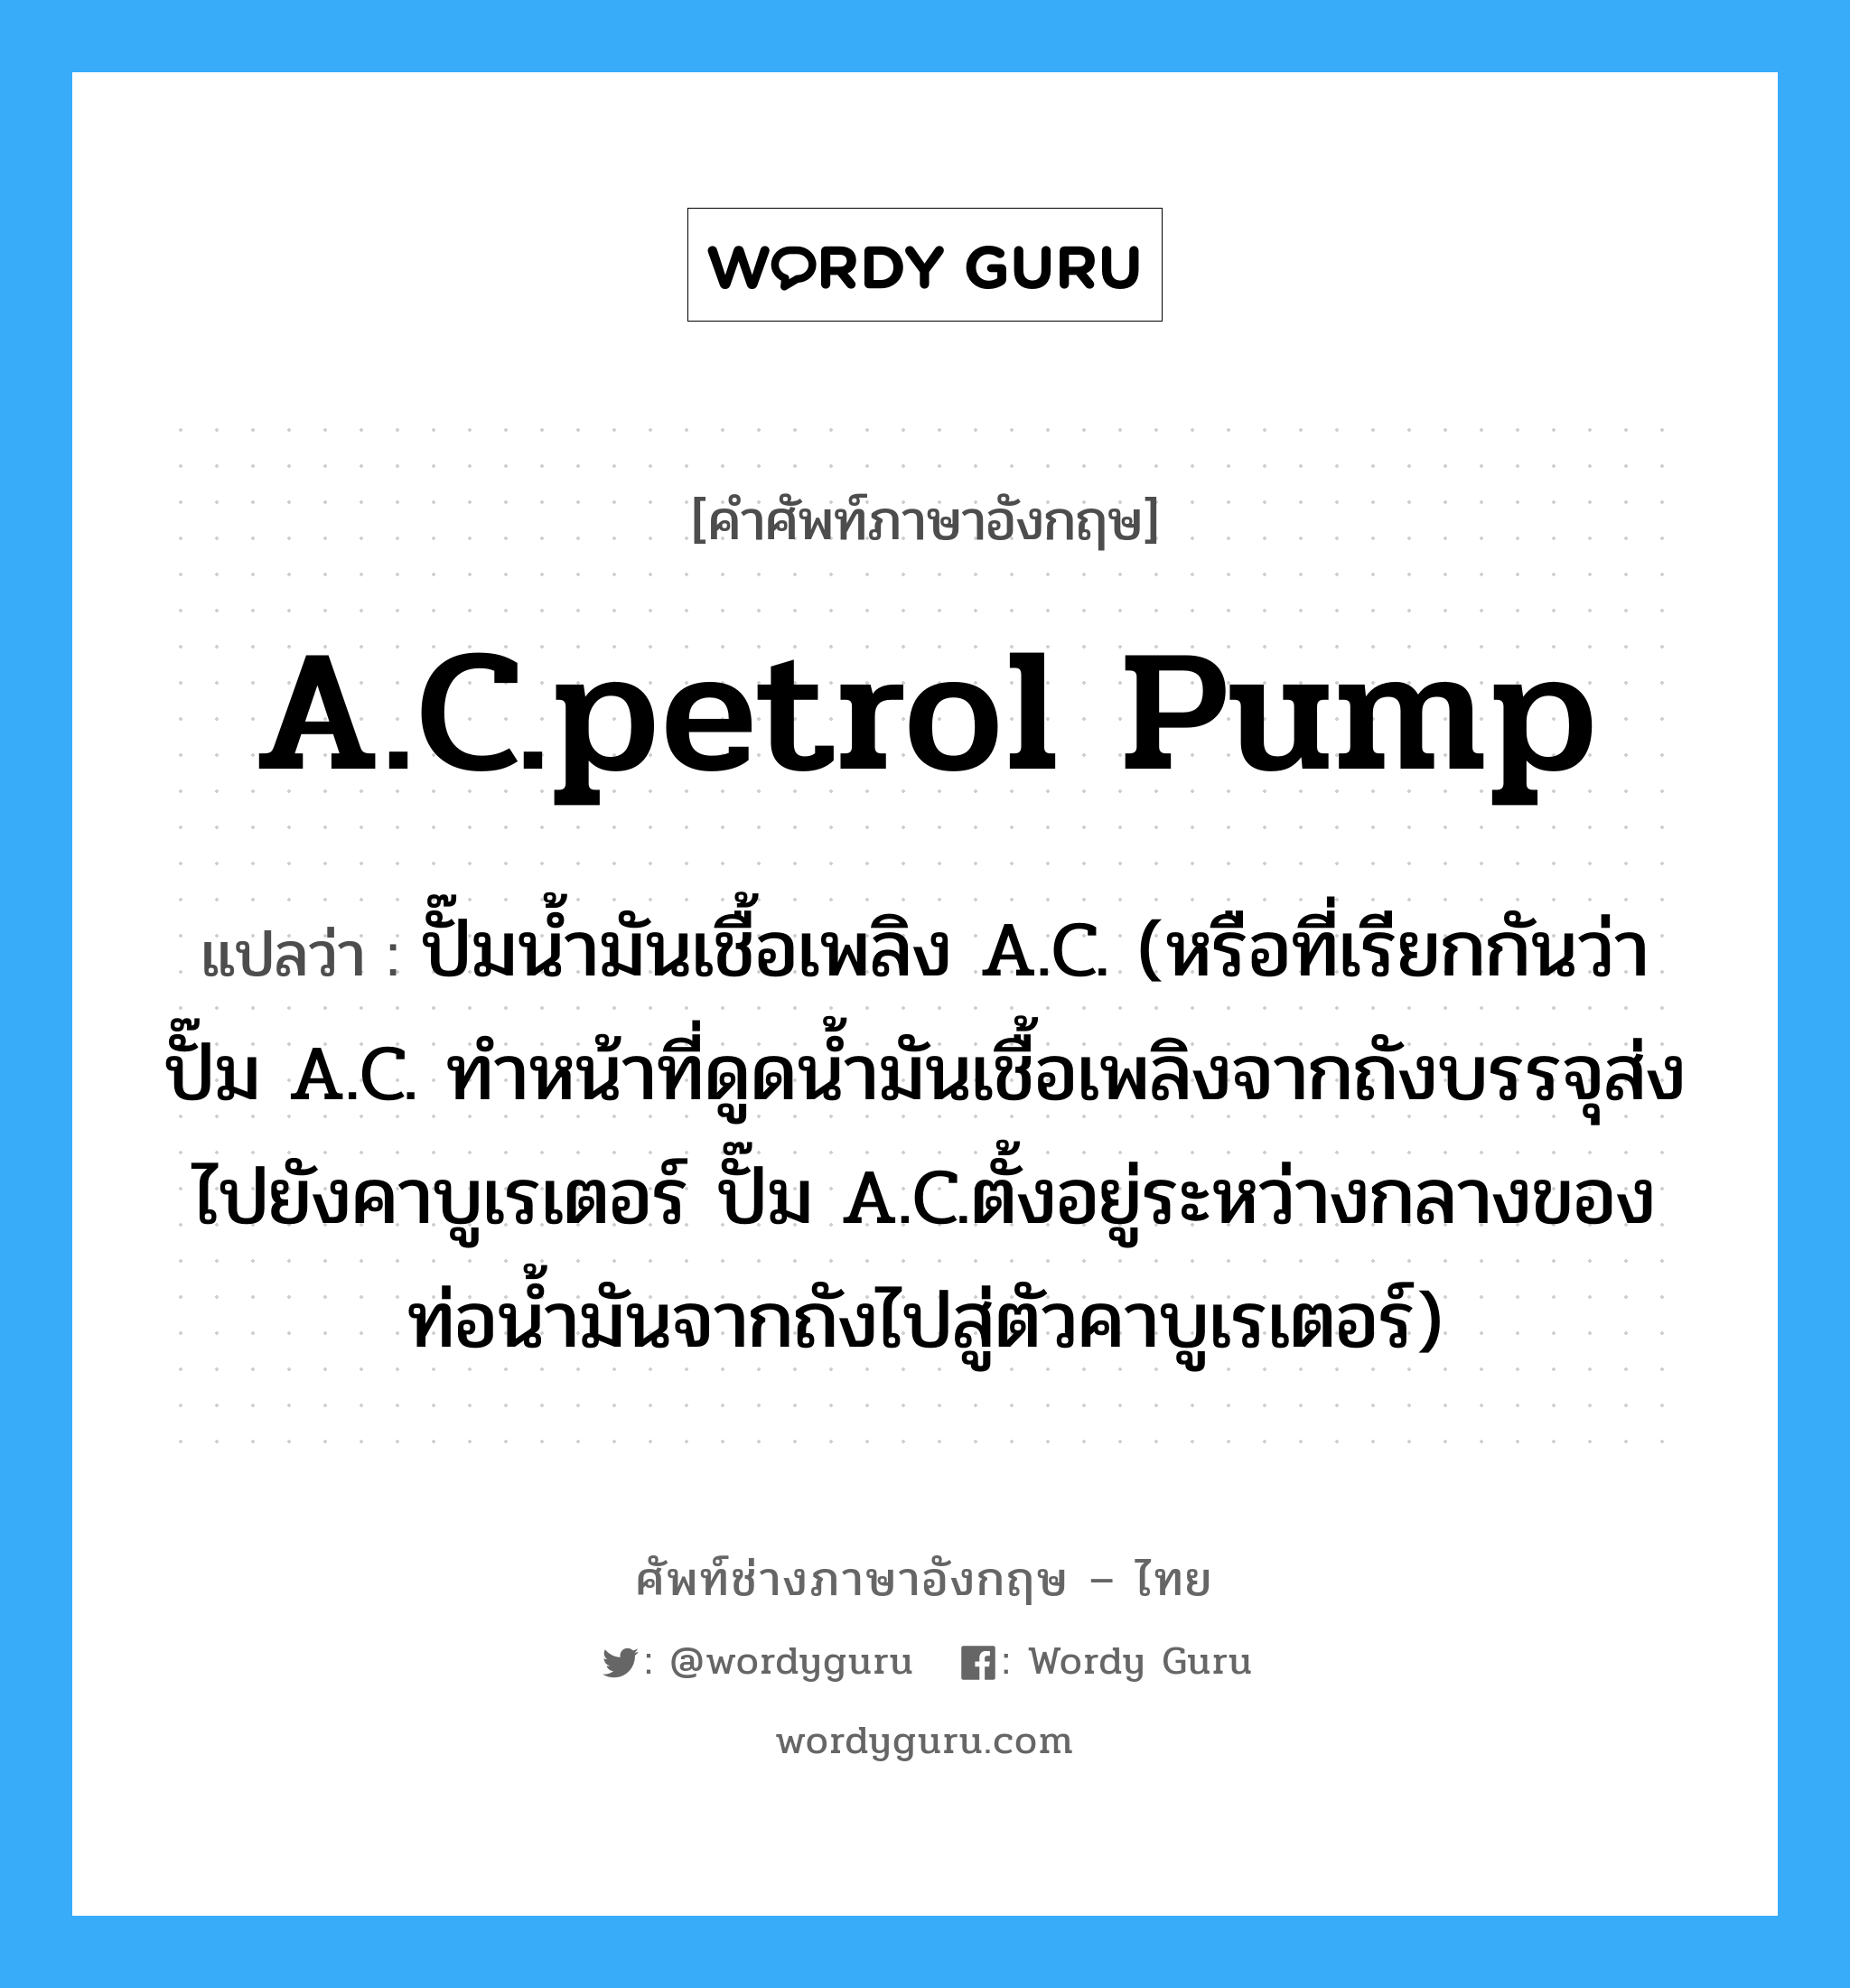 A.C.petrol pump แปลว่า?, คำศัพท์ช่างภาษาอังกฤษ - ไทย A.C.petrol pump คำศัพท์ภาษาอังกฤษ A.C.petrol pump แปลว่า ปั๊มน้ำมันเชื้อเพลิง A.C. (หรือที่เรียกกันว่า ปั๊ม A.C. ทำหน้าที่ดูดน้ำมันเชื้อเพลิงจากถังบรรจุส่งไปยังคาบูเรเตอร์ ปั๊ม A.C.ตั้งอยู่ระหว่างกลางของท่อน้ำมันจากถังไปสู่ตัวคาบูเรเตอร์)